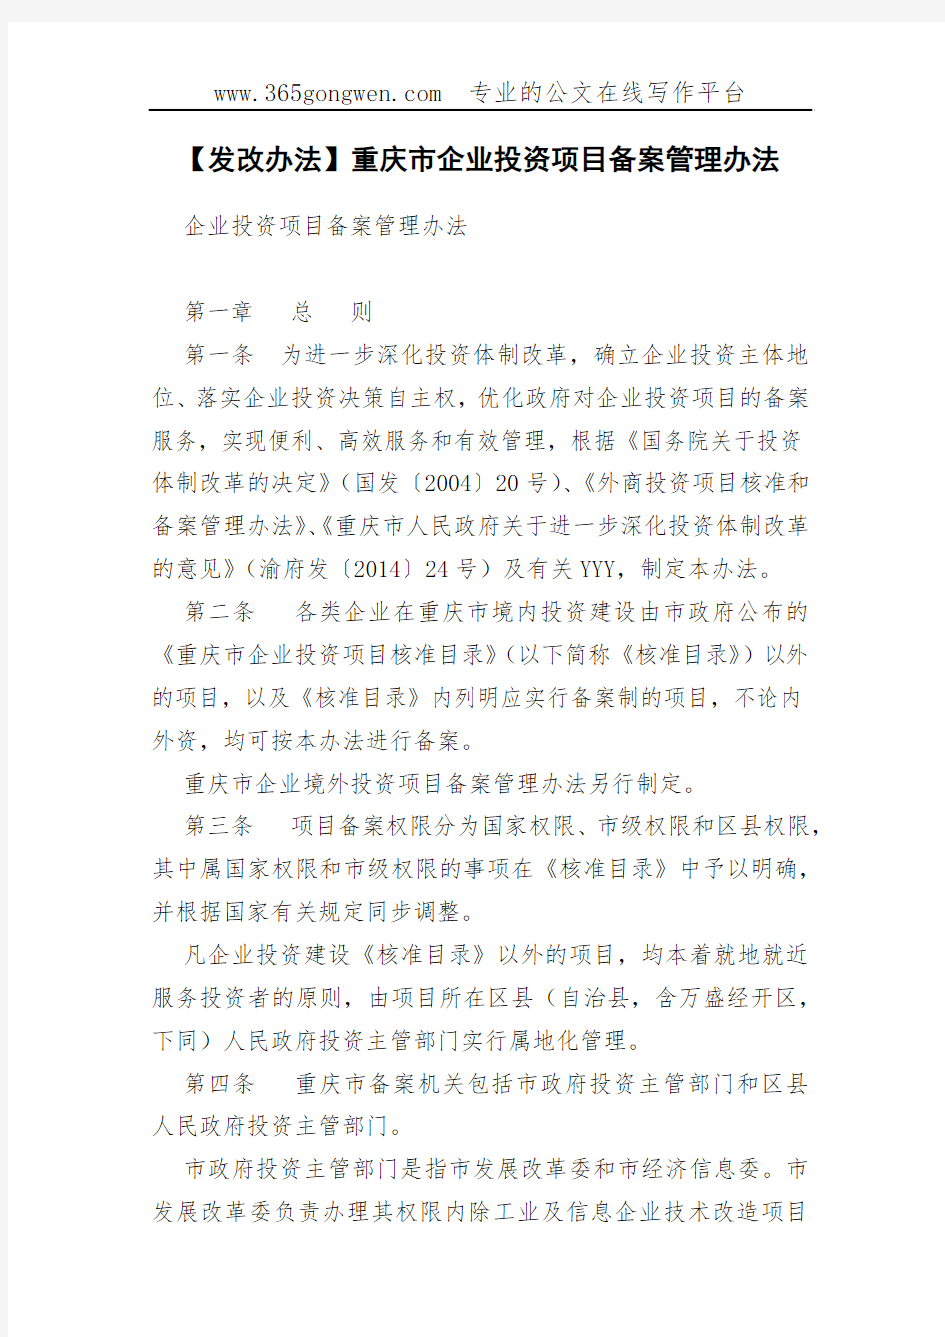 【发改办法】重庆市企业投资项目备案管理办法